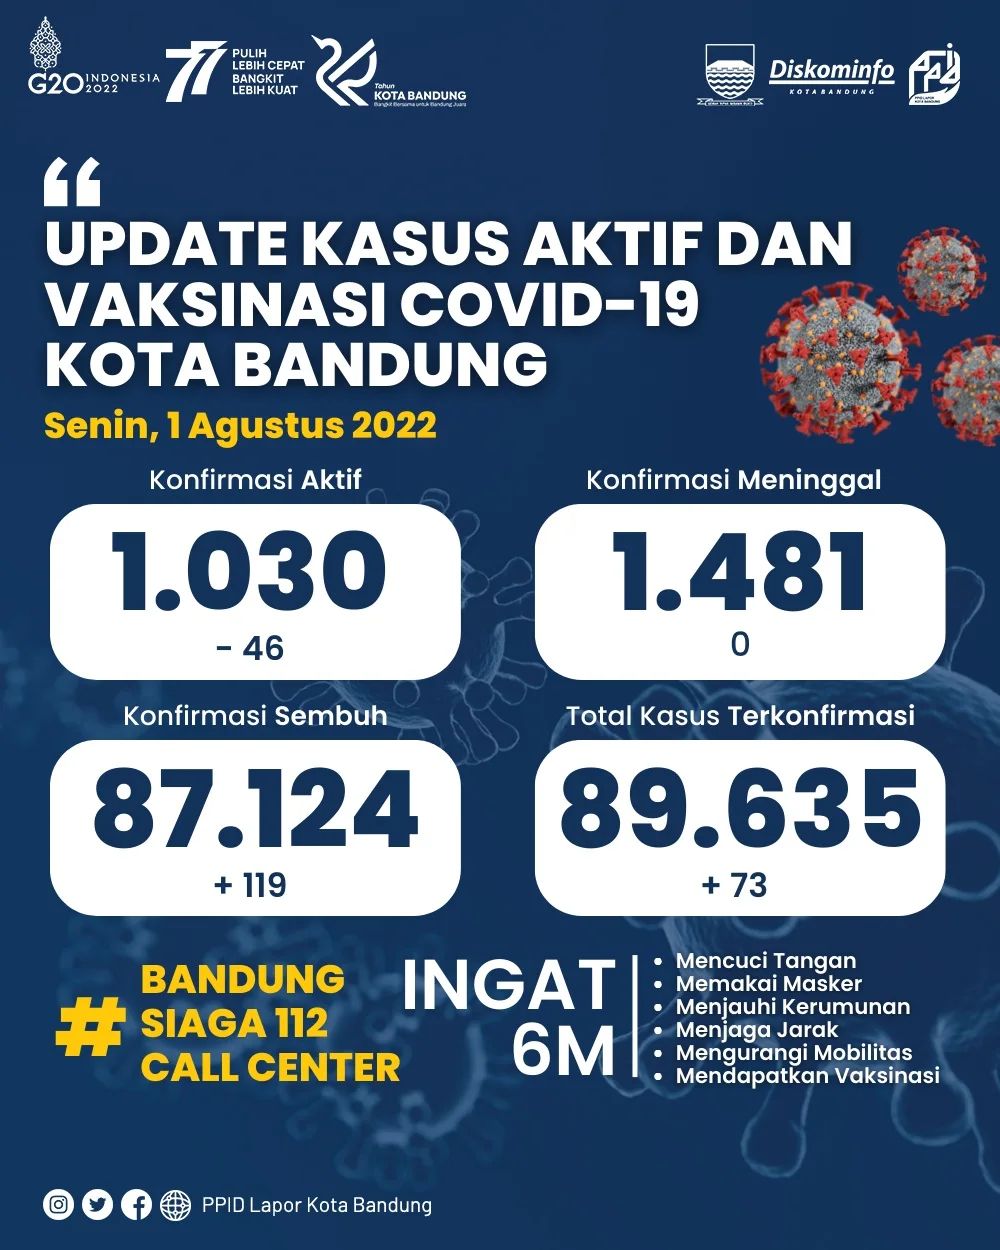 UPDATE STATISTIK COVID-19 DI KOTA BANDUNG PER TANGGAL 1 AGUSTUS 2022